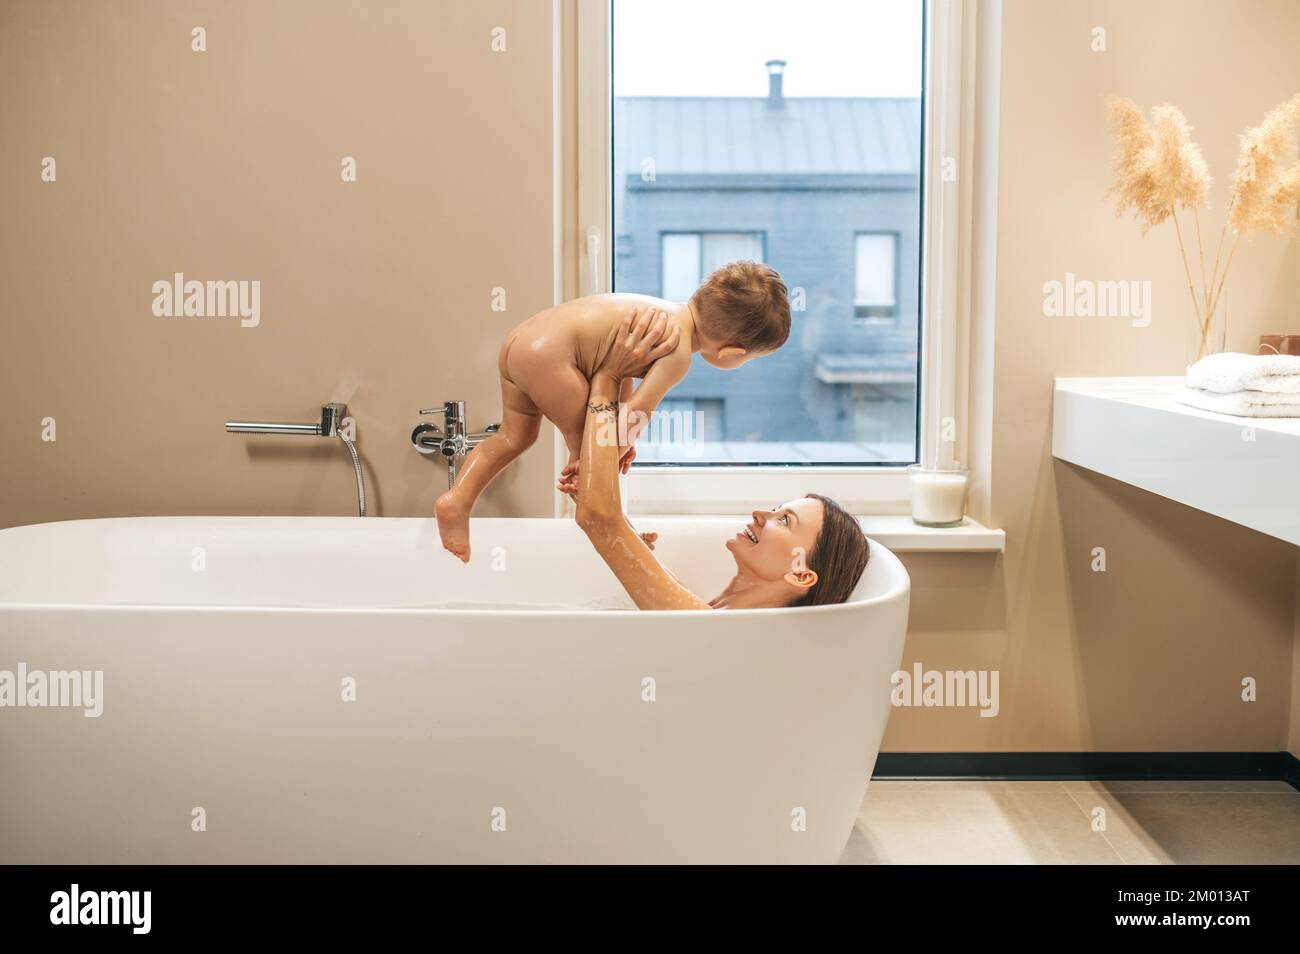 Lächelnd zufriedene junge Frau, die in der Badewanne lag und das Baby in die Luft hob. Stockfoto